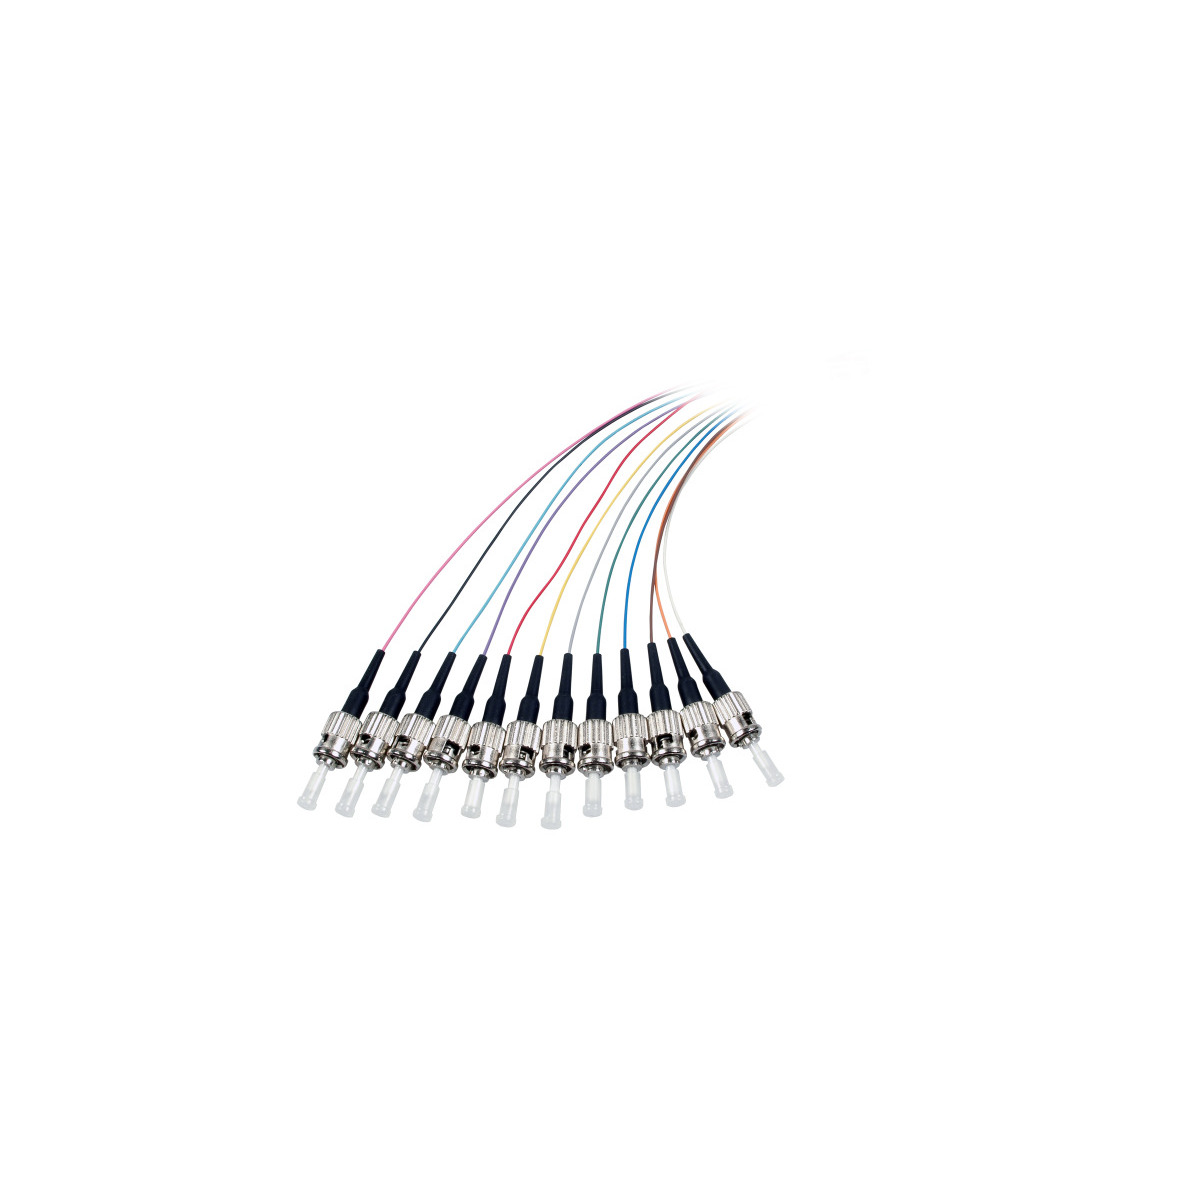 Faserpigtail, Pigtails Kabel 2 m / COMMUNIK ST Glasfaserkabel,